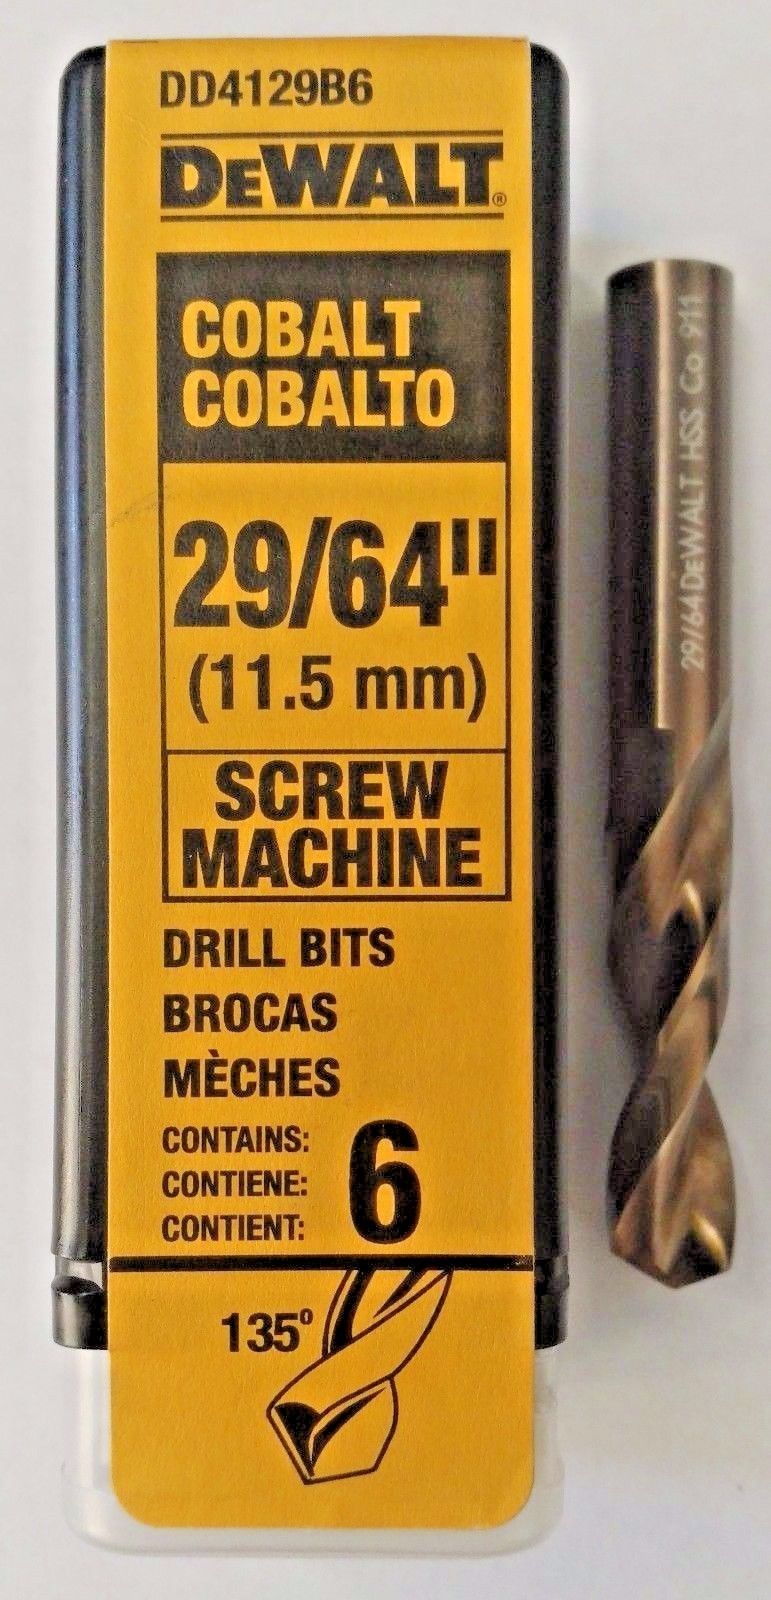 DeWalt DD4129B6 29/64" Cobalt Screw Machine Drill Bits Germany 6 Pack